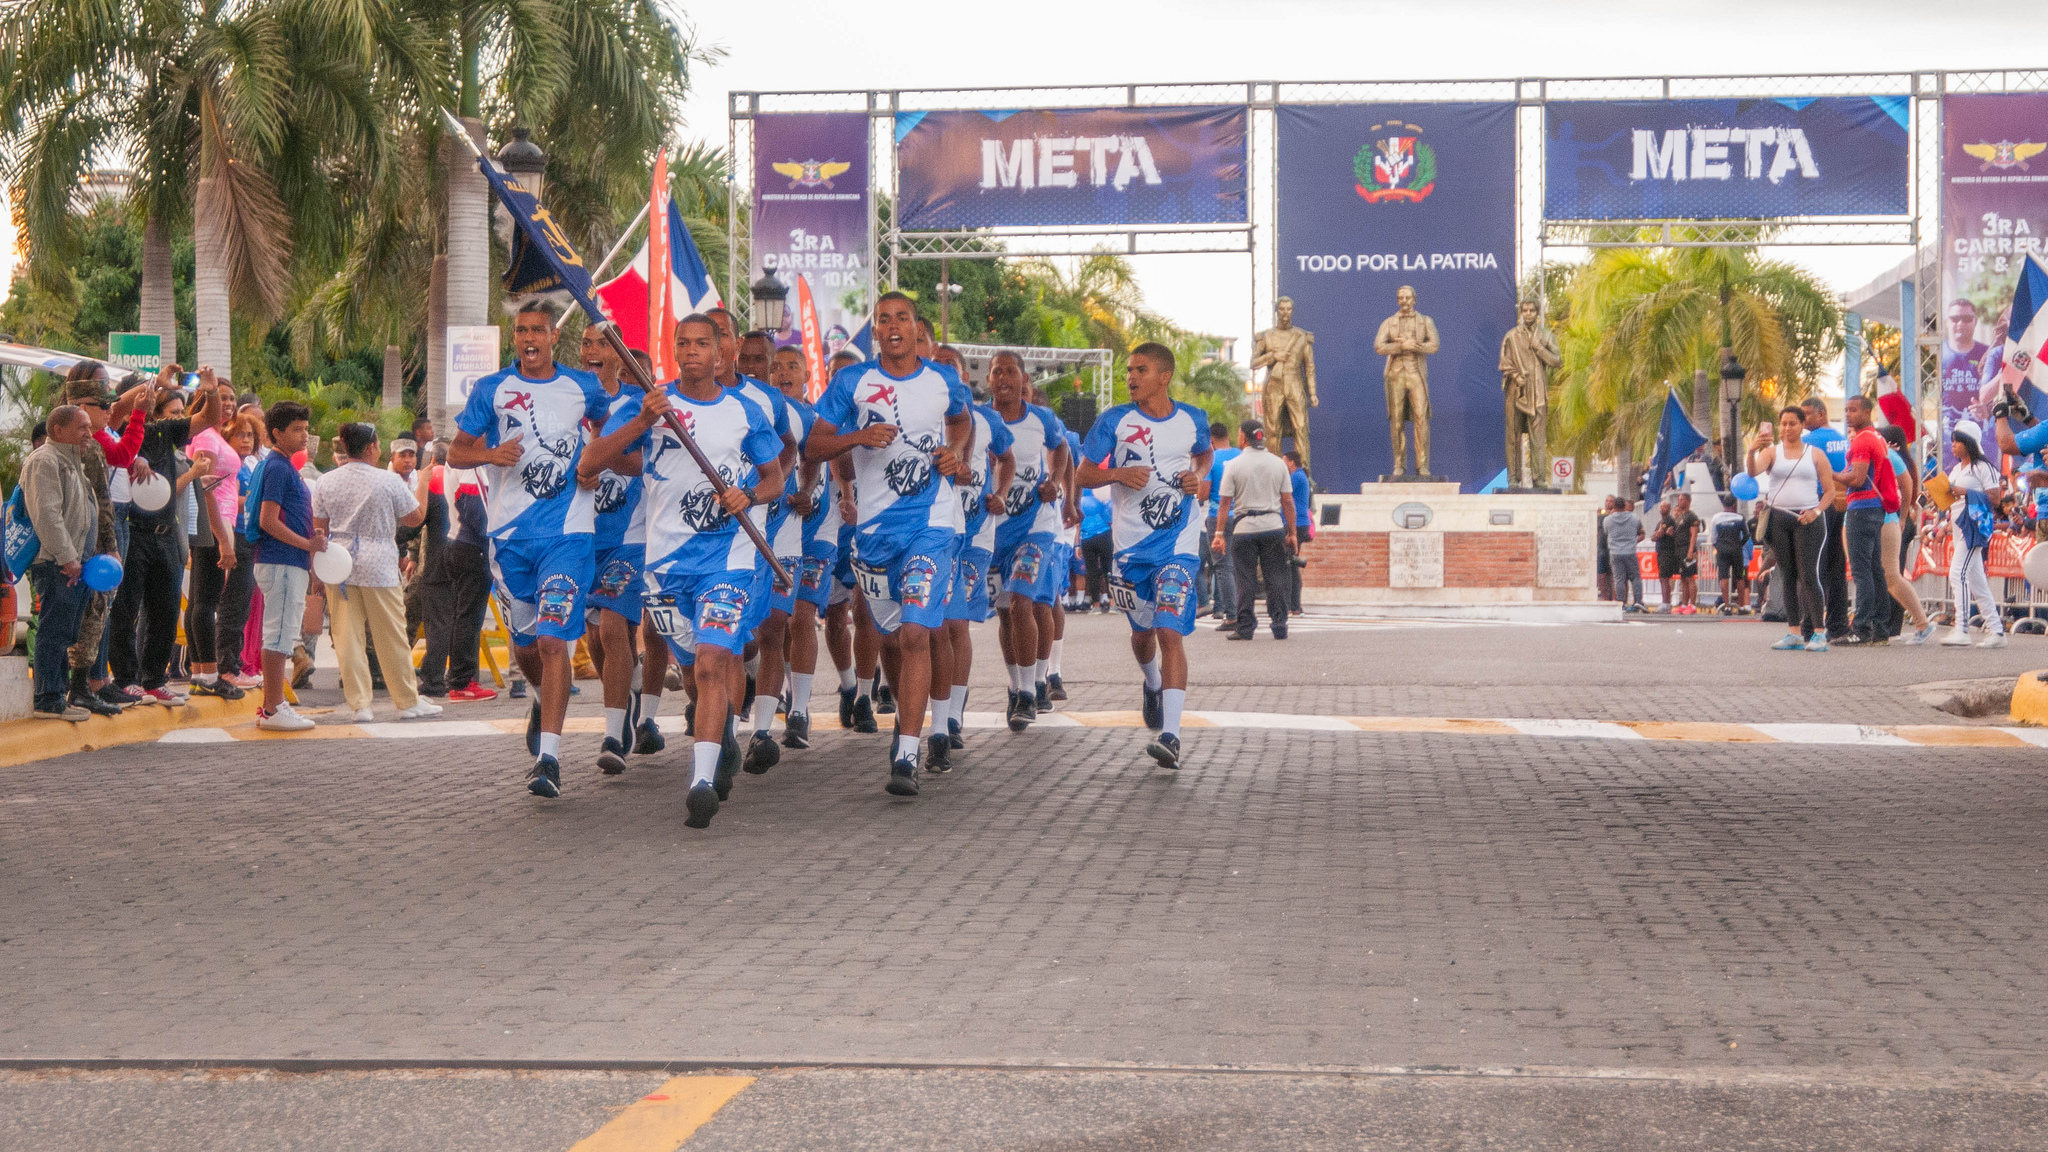 REPÚBLICA DOMINICANA: Ministerio de Defensa realiza Tercera Carrera 5K y 10K; estrecha lazos entre ciudadanos y Fuerzas Armadas a través de fomento del deporte